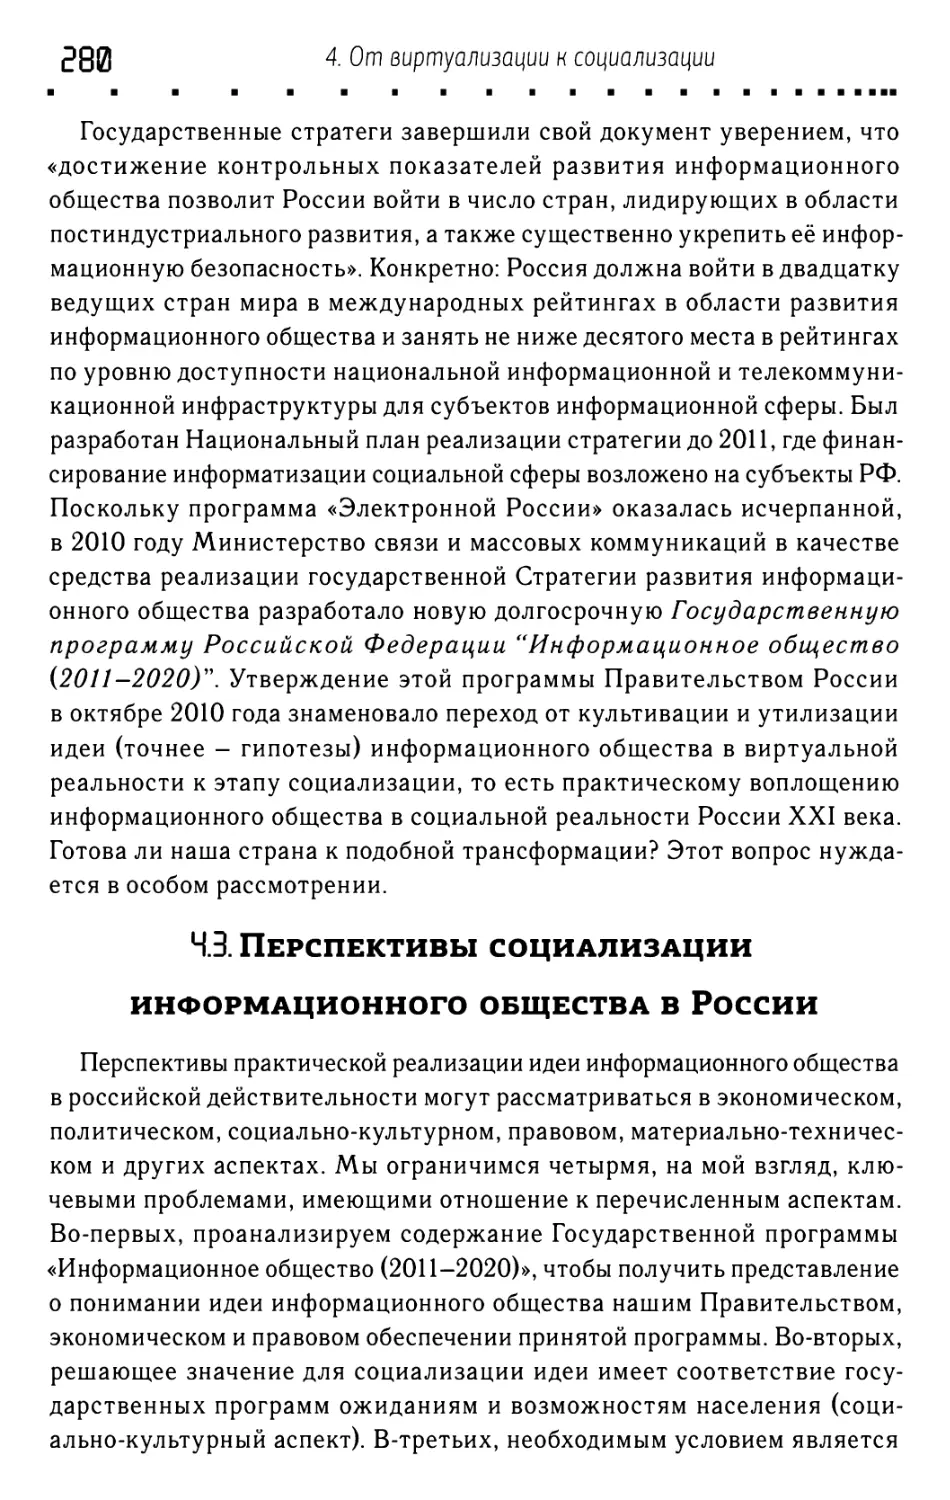 4.3. Перспективы социализации информационного общества в России